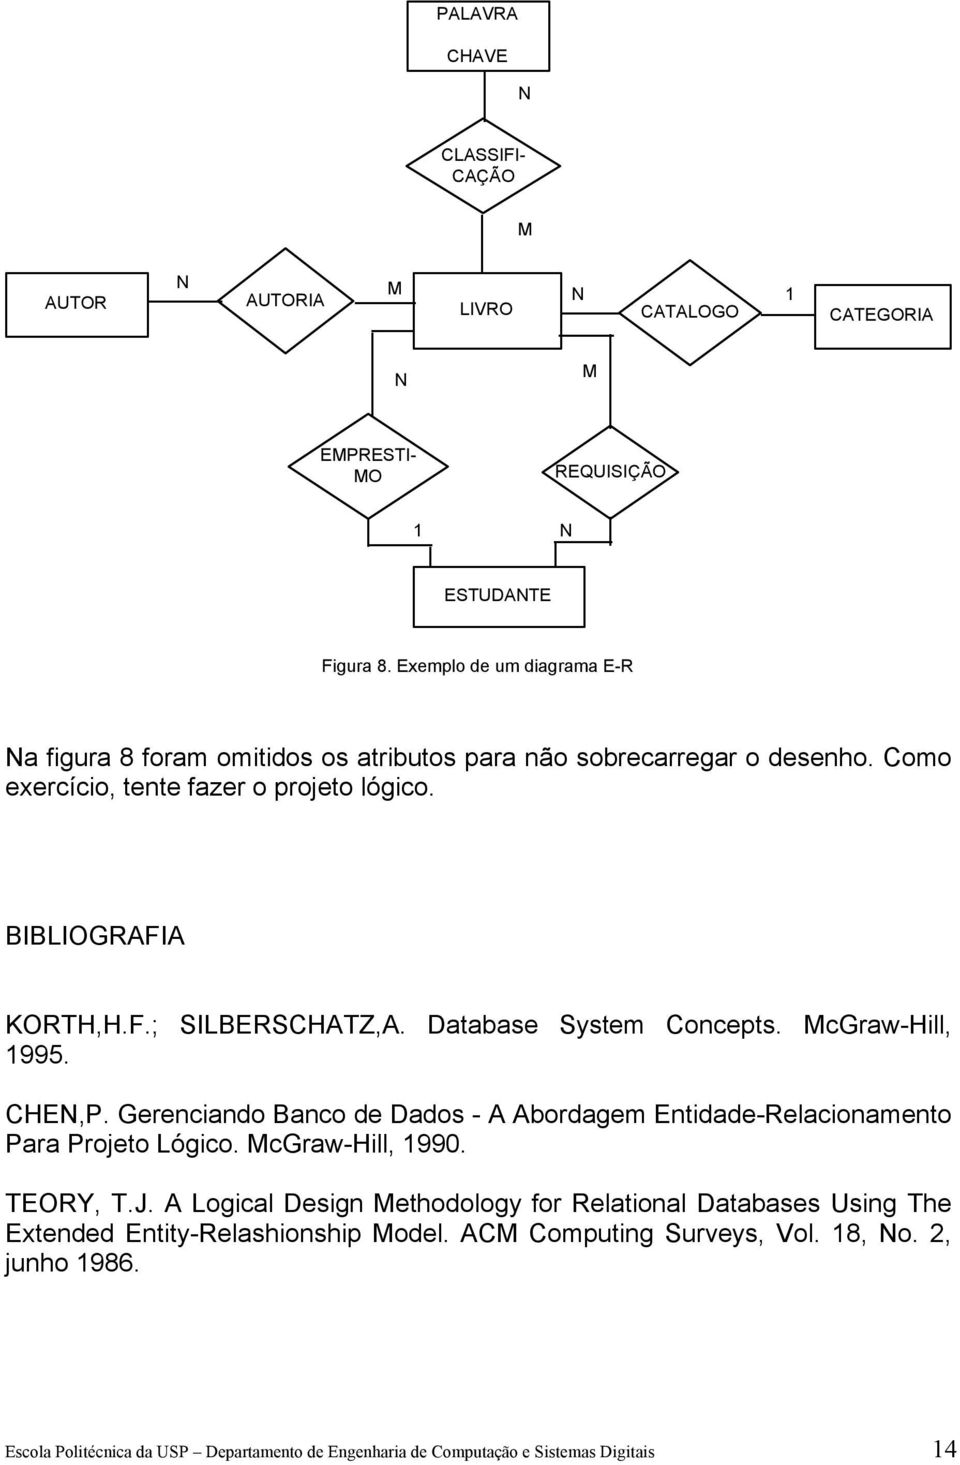 Database System Concepts. McGraw-Hill, 1995. CHE,P. Gerenciando Banco de Dados - A Abordagem Entidade-Relacionamento Para Projeto Lógico. McGraw-Hill, 1990. TEORY, T.J.